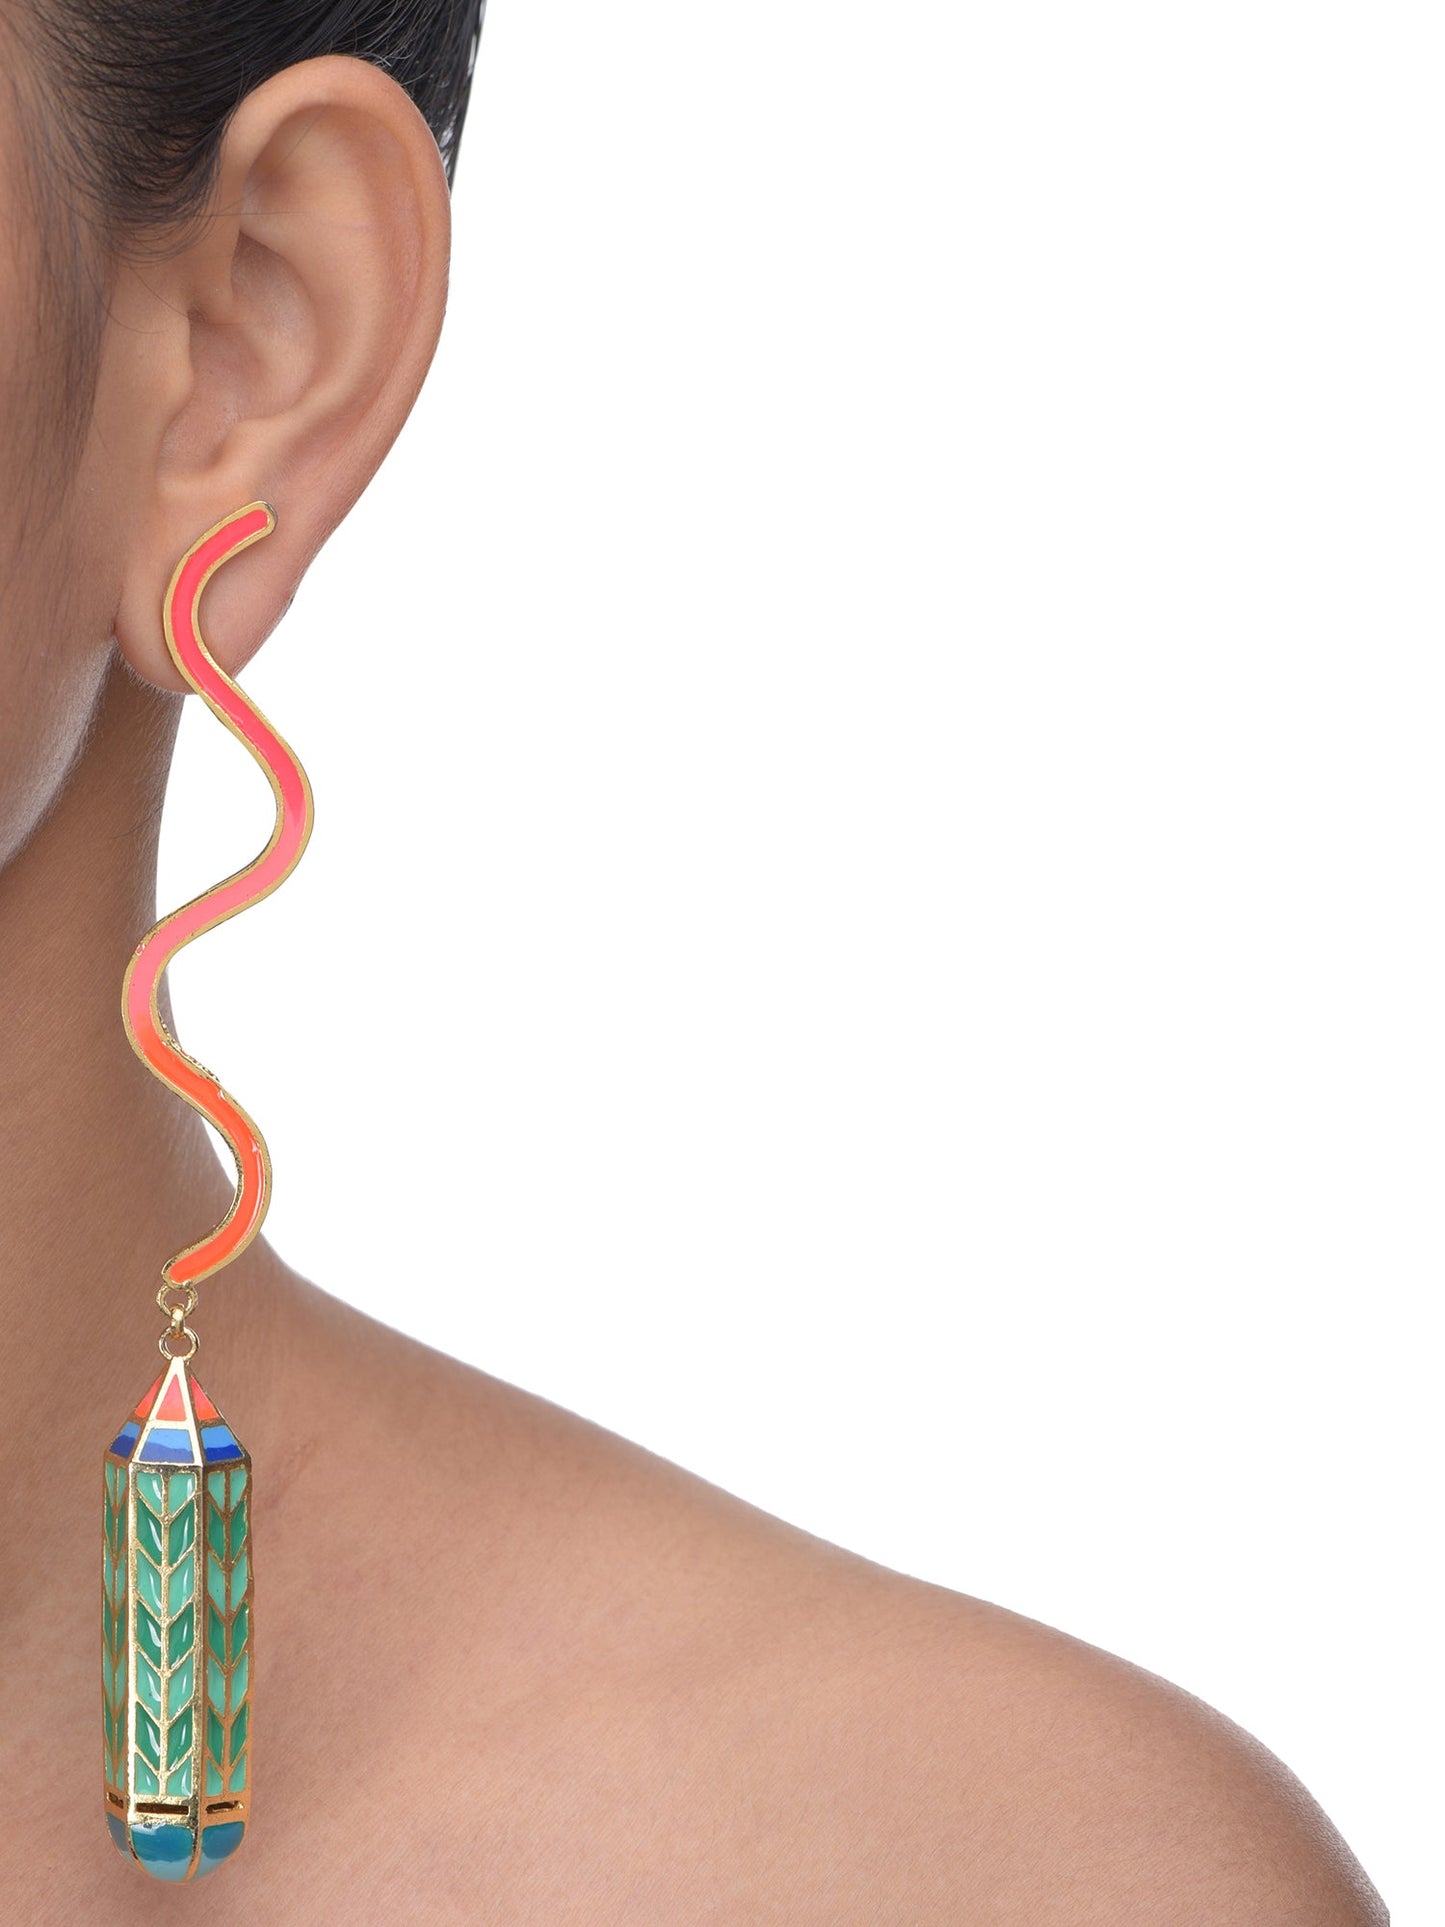 Pencil Daydream earrings